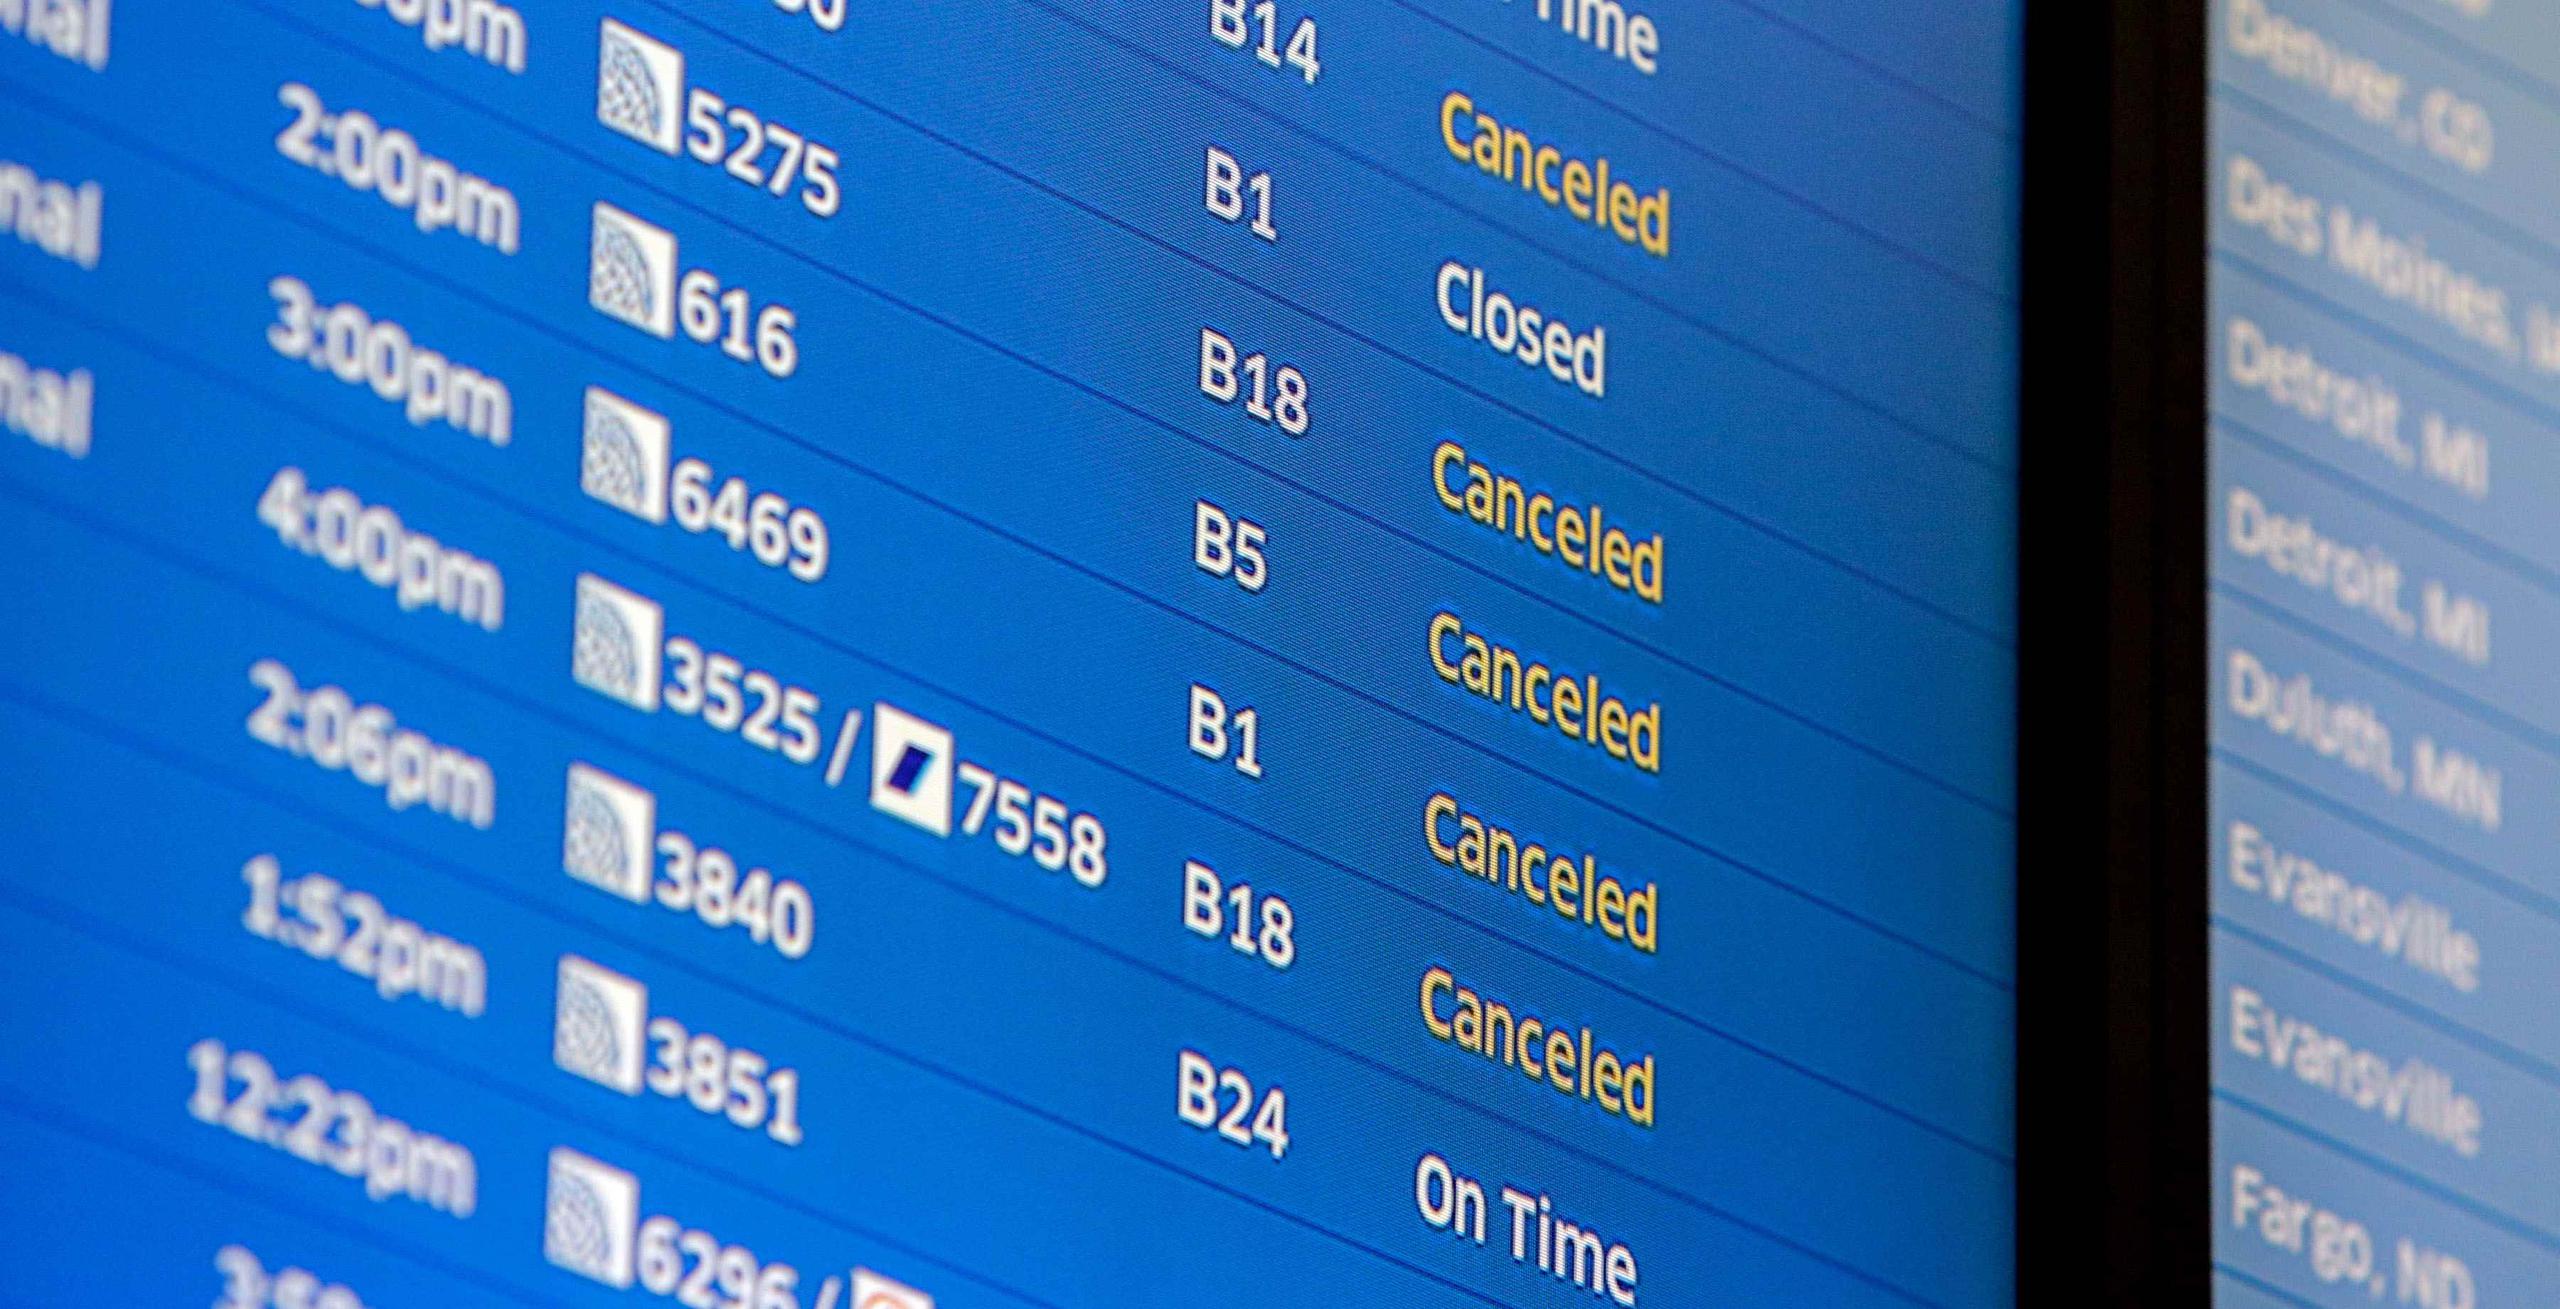 Todas las grandes compañías aéreas hicieron preparativos para que los pasajeros puedan reservar los vuelos que no pudieron hacer el fin de semana por la tormenta.